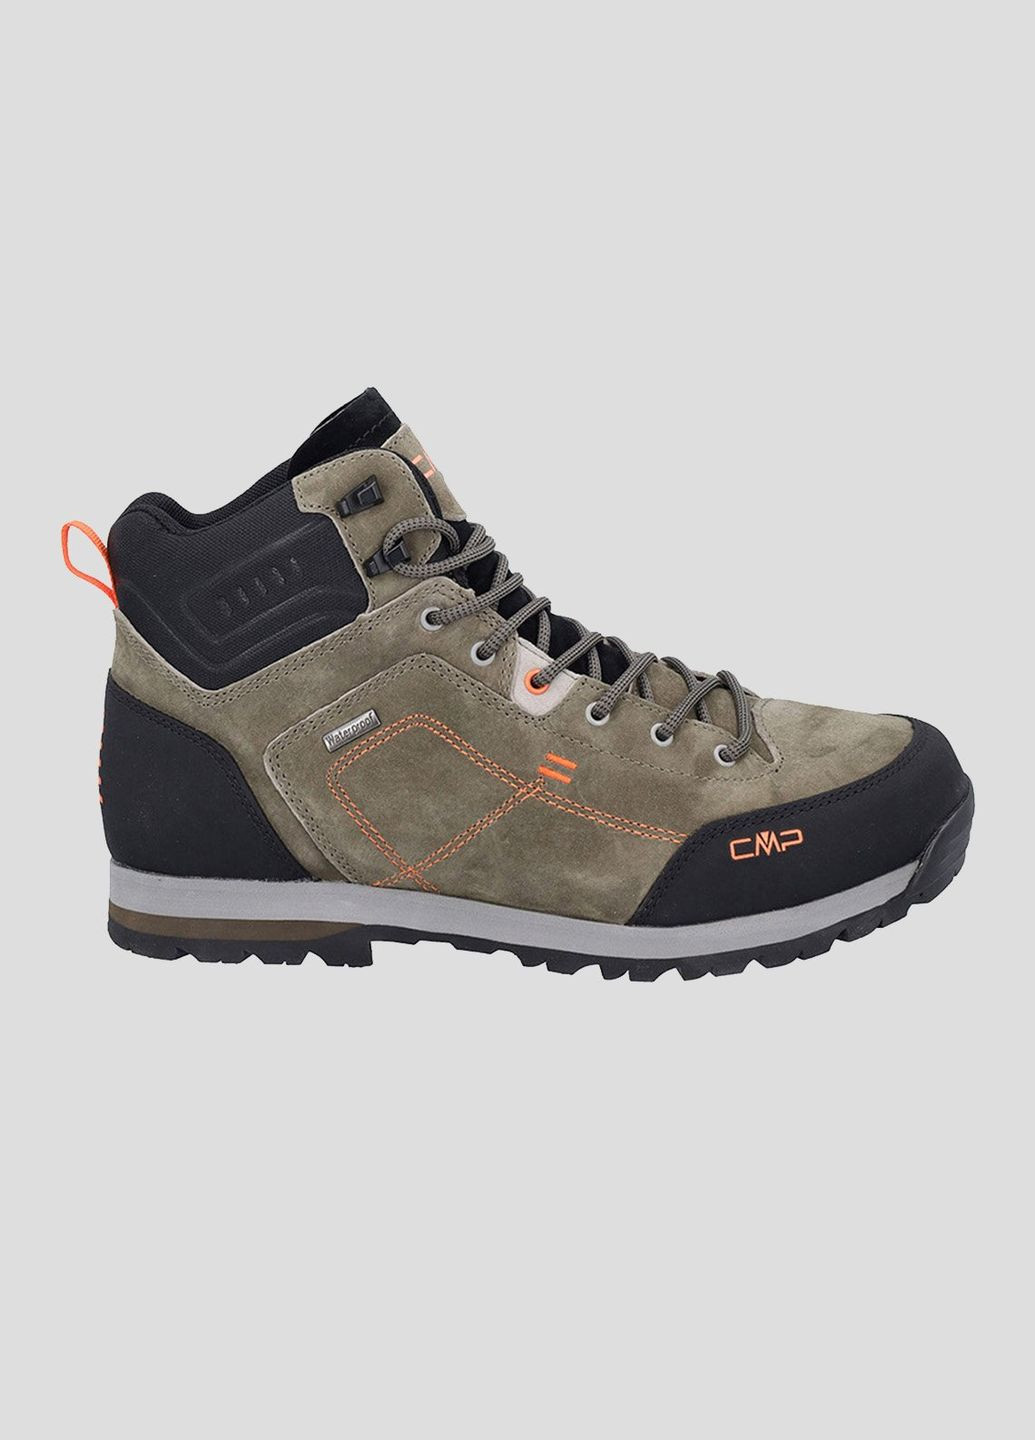 Коричневые демисезонные треккинговые ботинки alcor 2.0 mid trekking shoes CMP